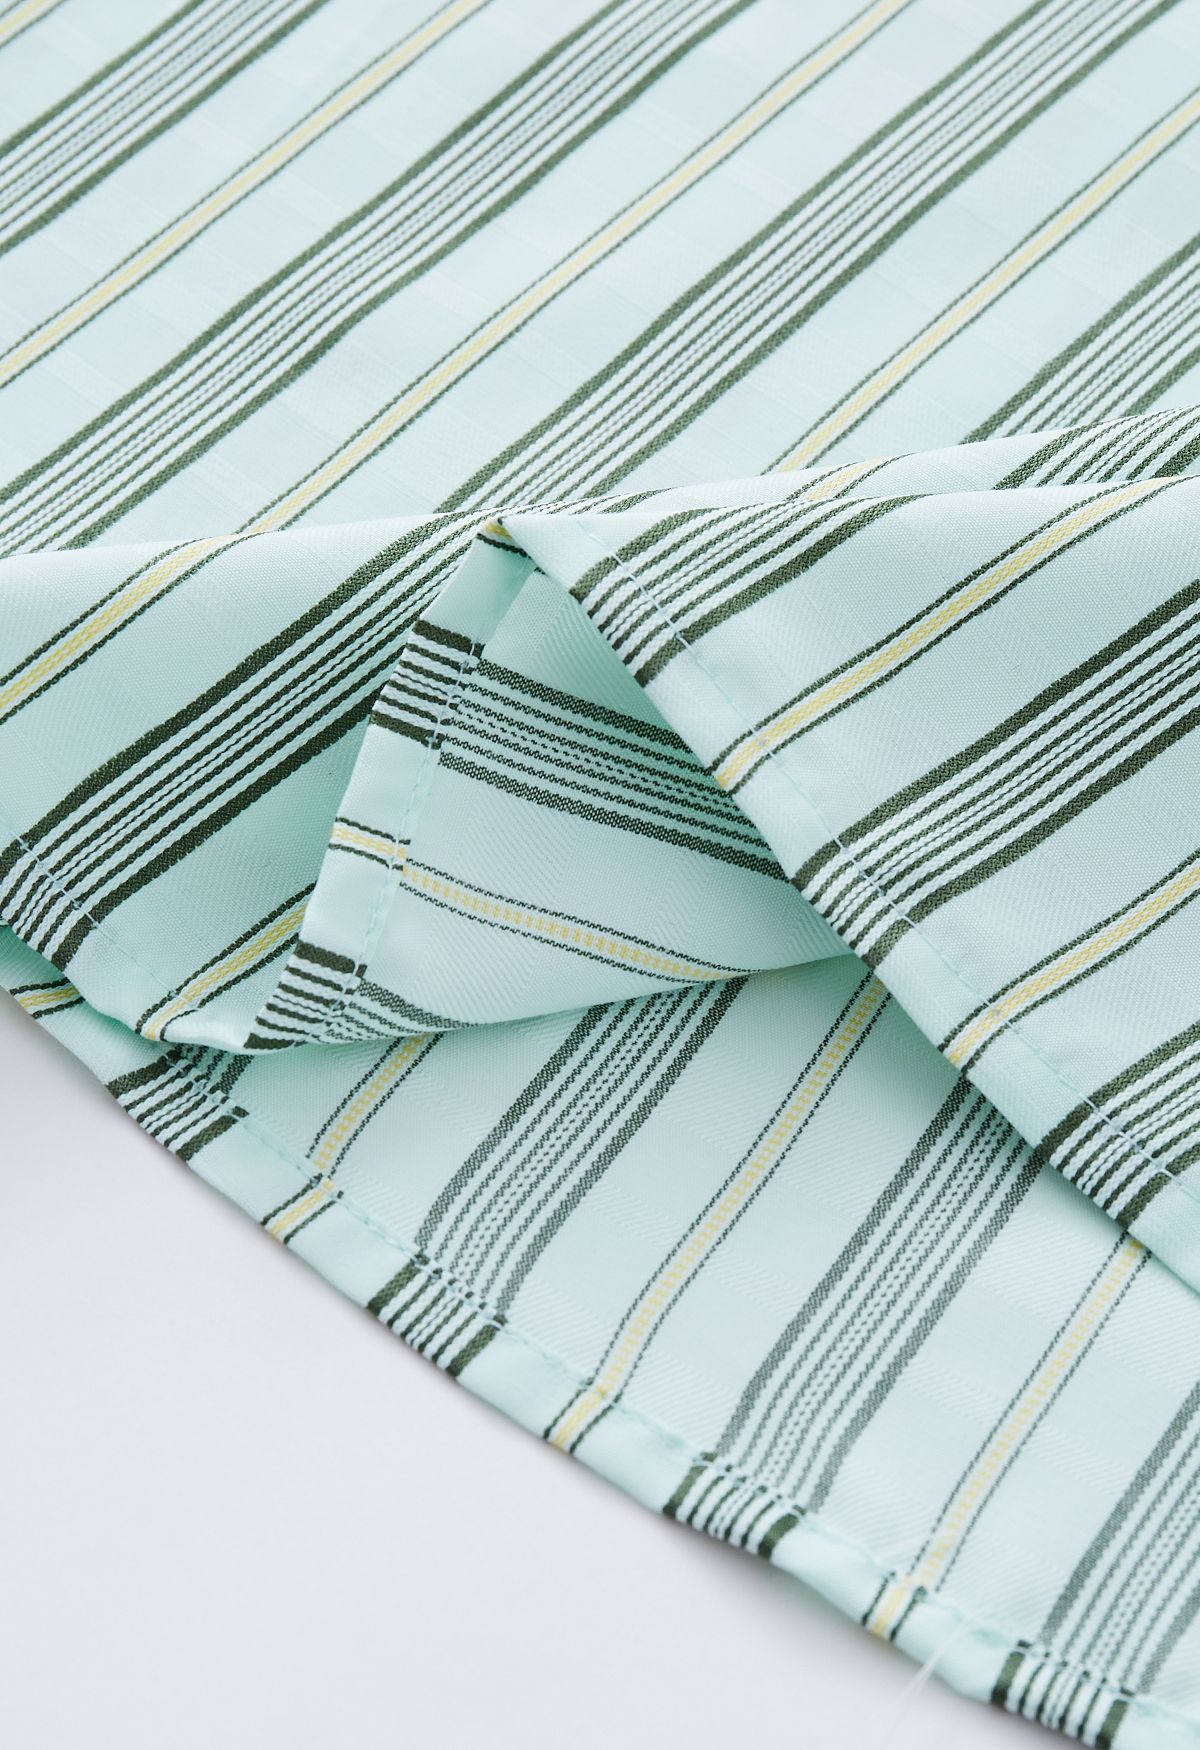 Chemise boutonnée à rayures verticales en vert